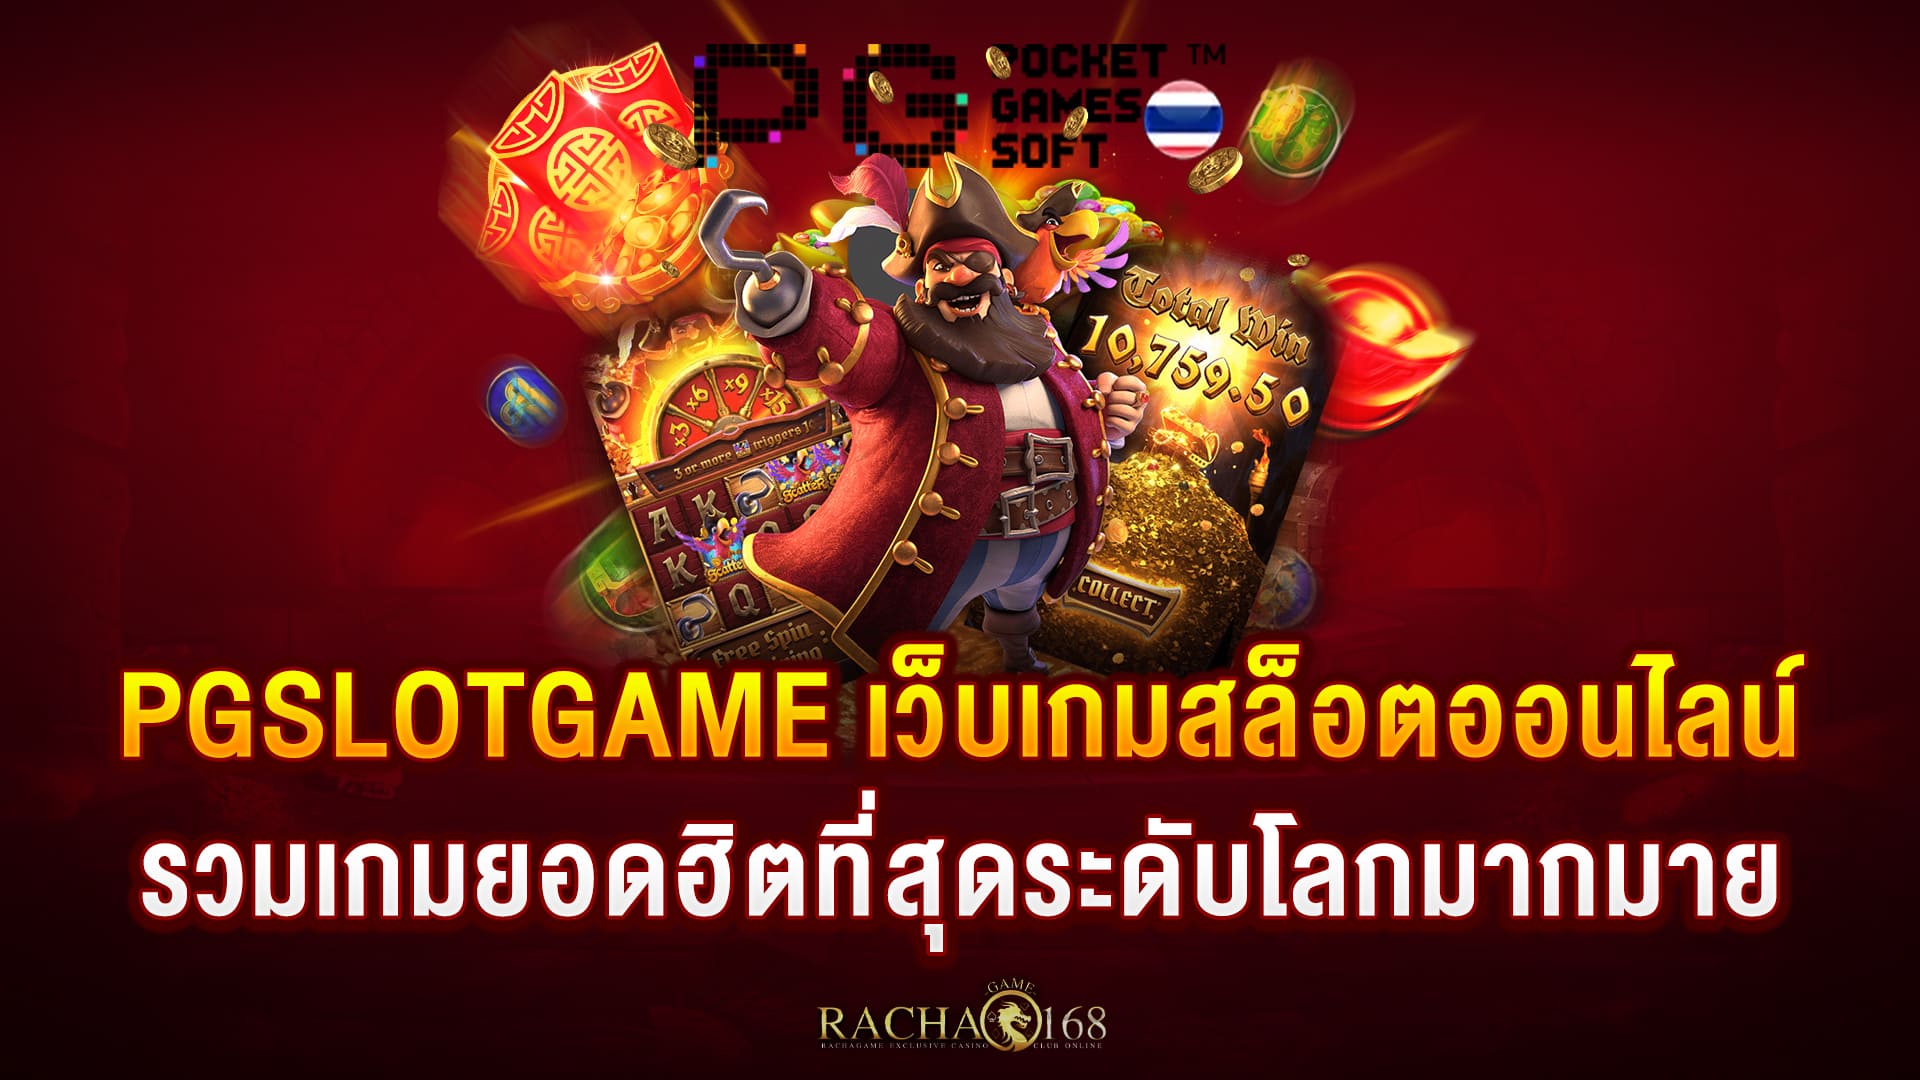 2.PGSLOTGAME-เว็บเกมสล็อตออนไลน์-รวมเกมยอดฮิตที่สุดระดับโลกมากมาย